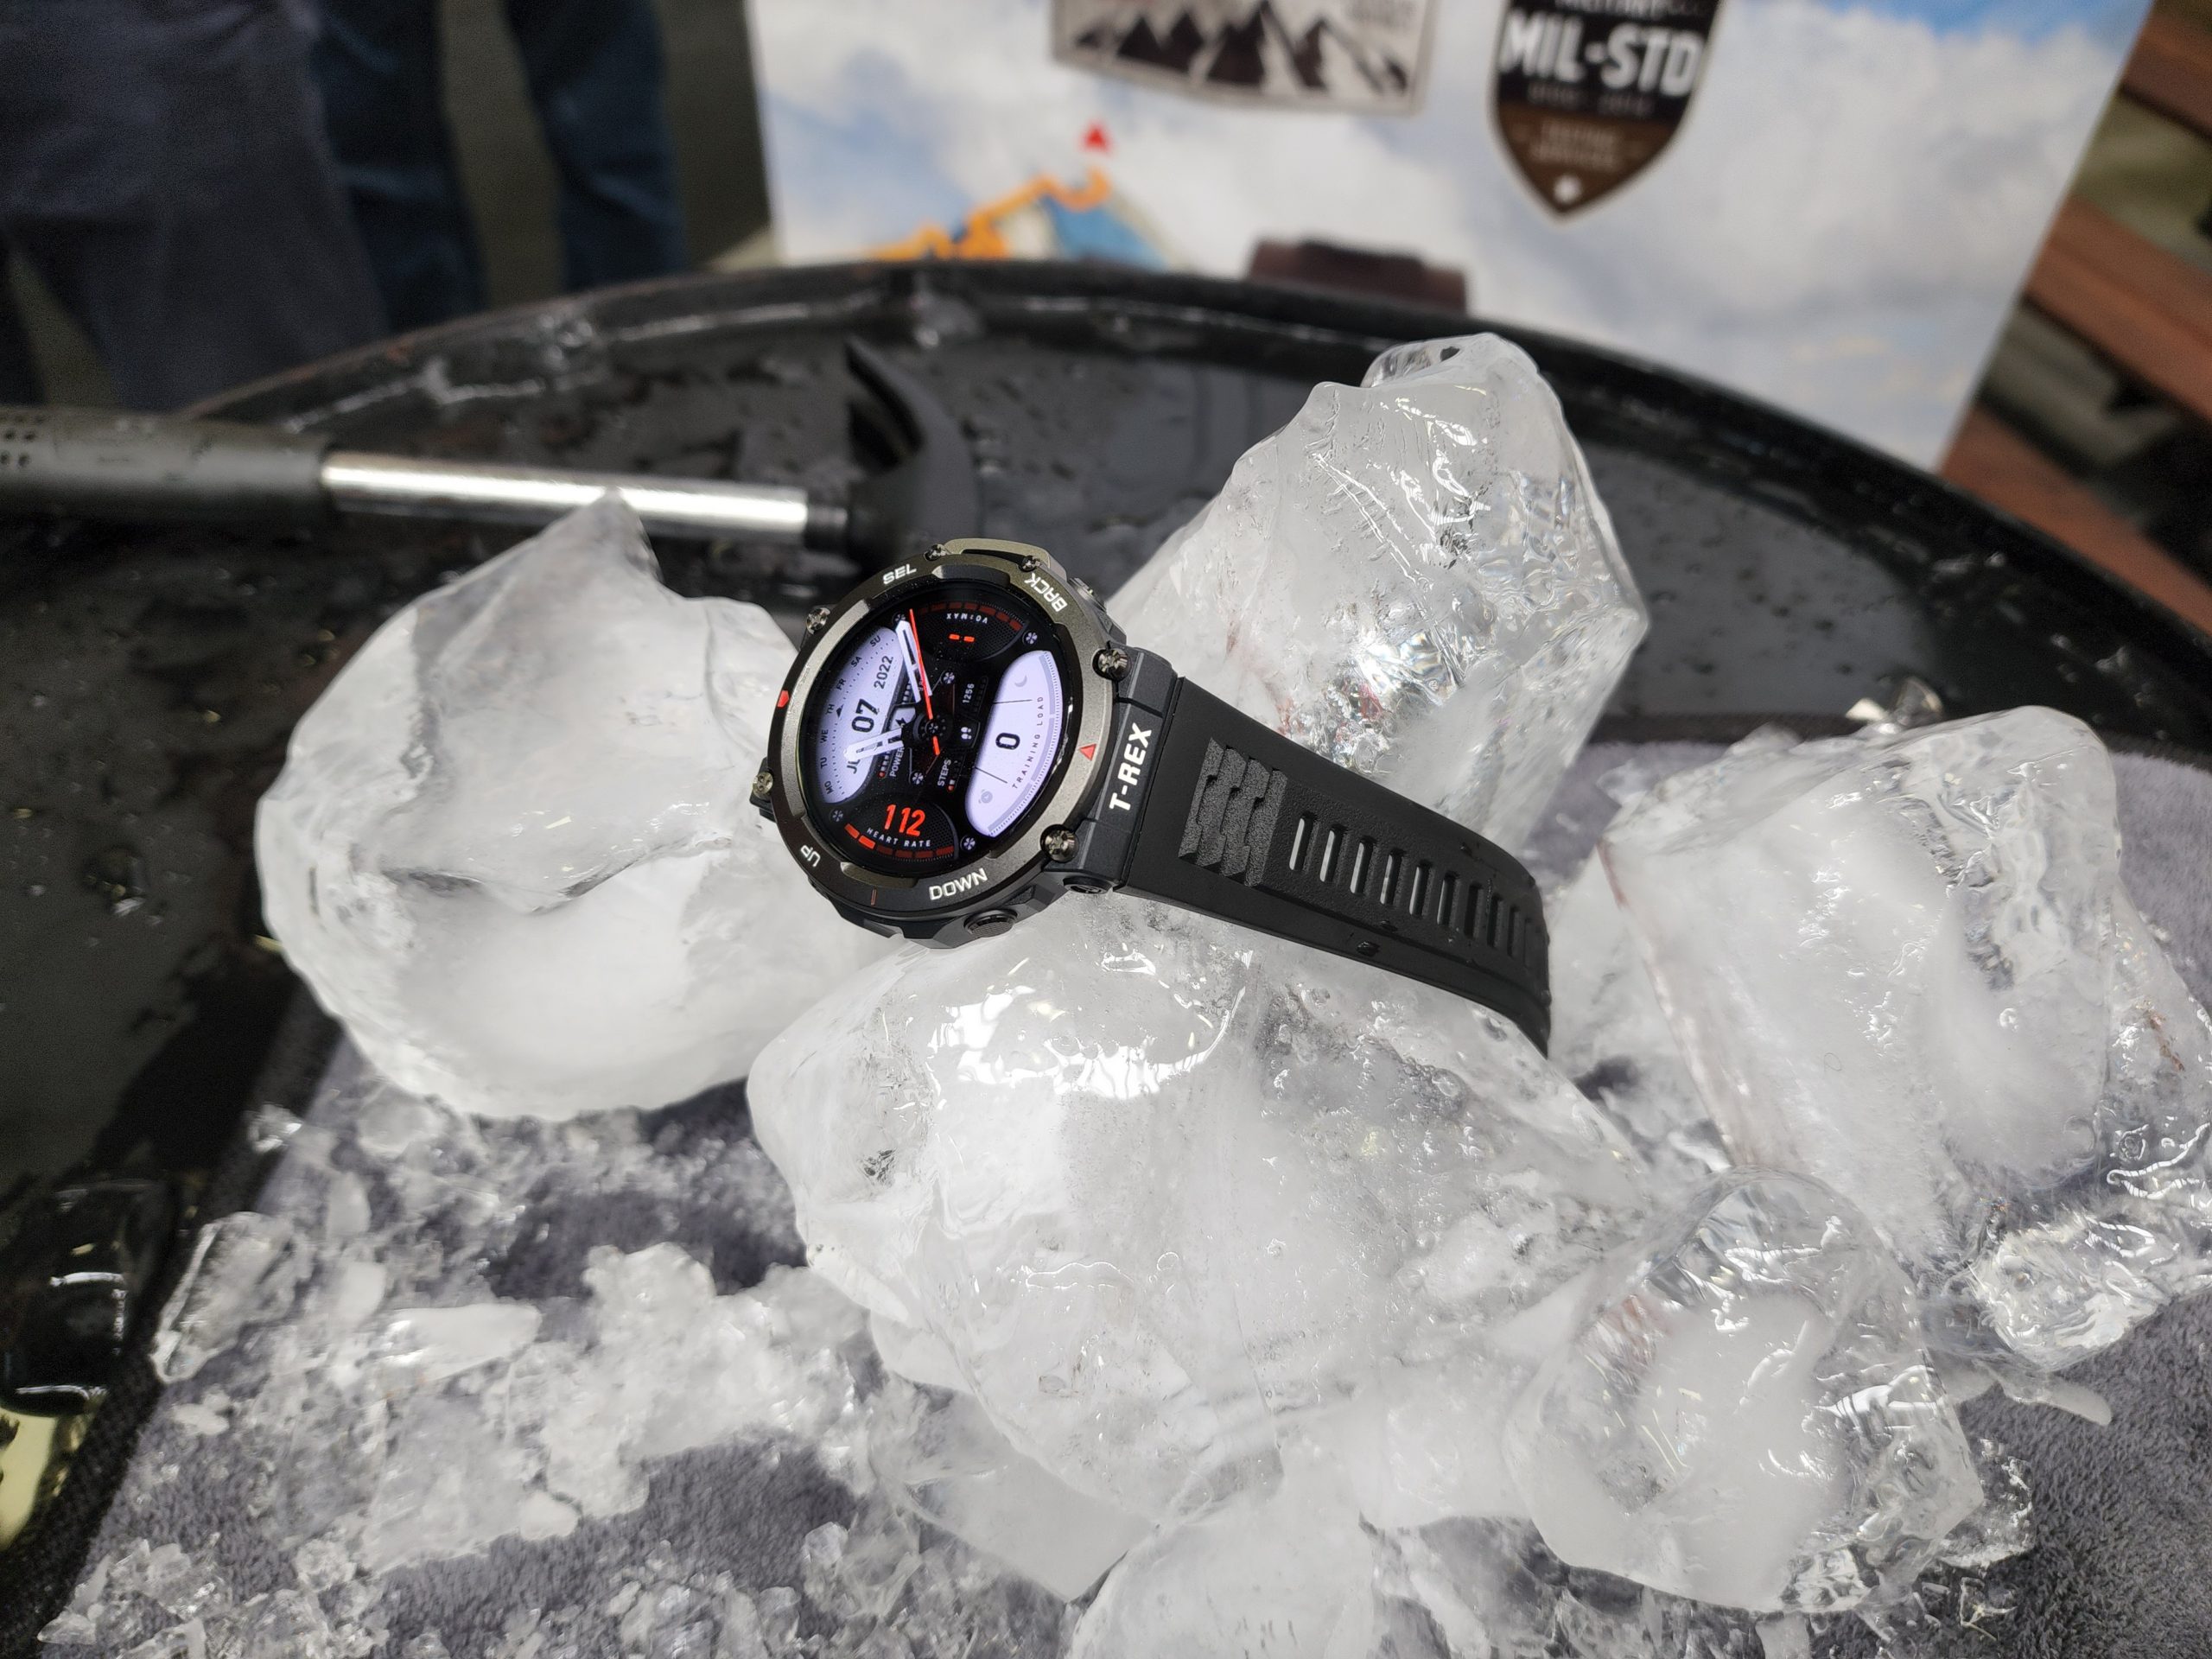 Jam pintar lasak Amazfit T-Rex 2 kini rasmi di Malaysia pada harga RM 799 sahaja 12